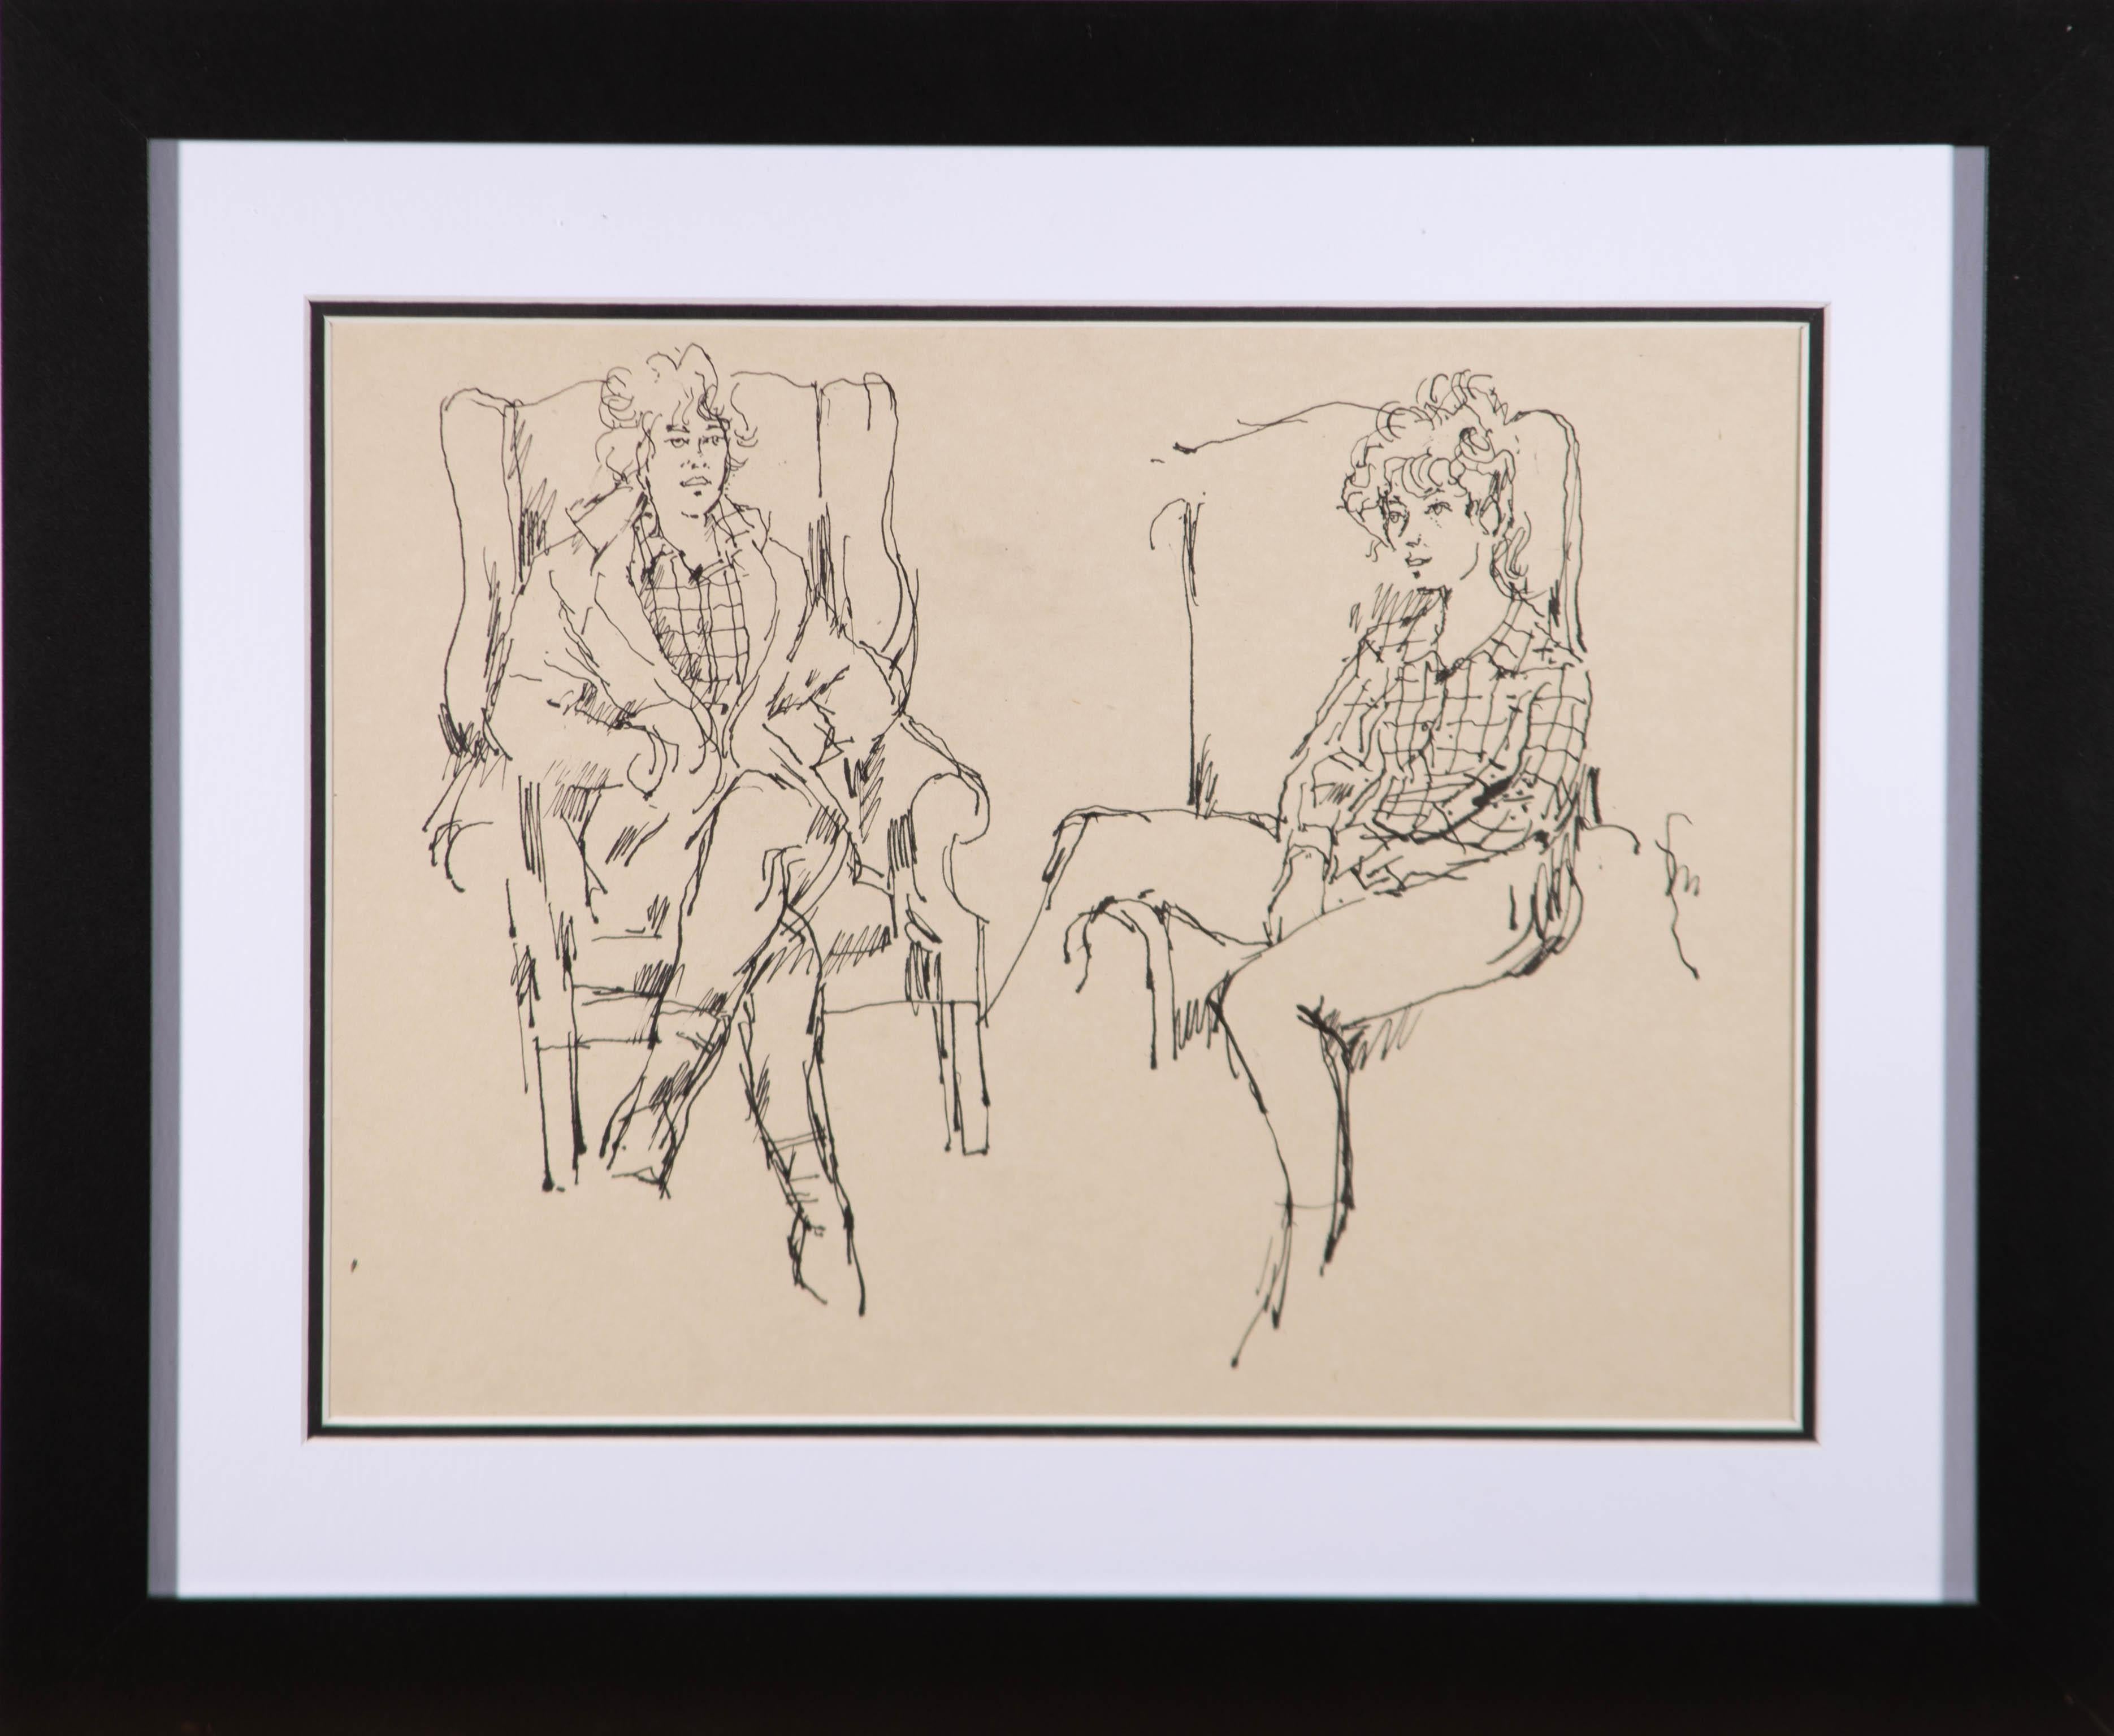 Eine schöne Federzeichnung des Künstlers Peter Collins, die zwei Studien der gleichen Figur auf einem Sessel sitzend zeigt. Nicht signiert. Gut präsentiert in einem weißen auf schwarzem Karton und in einem einfachen zeitgenössischen schwarzen